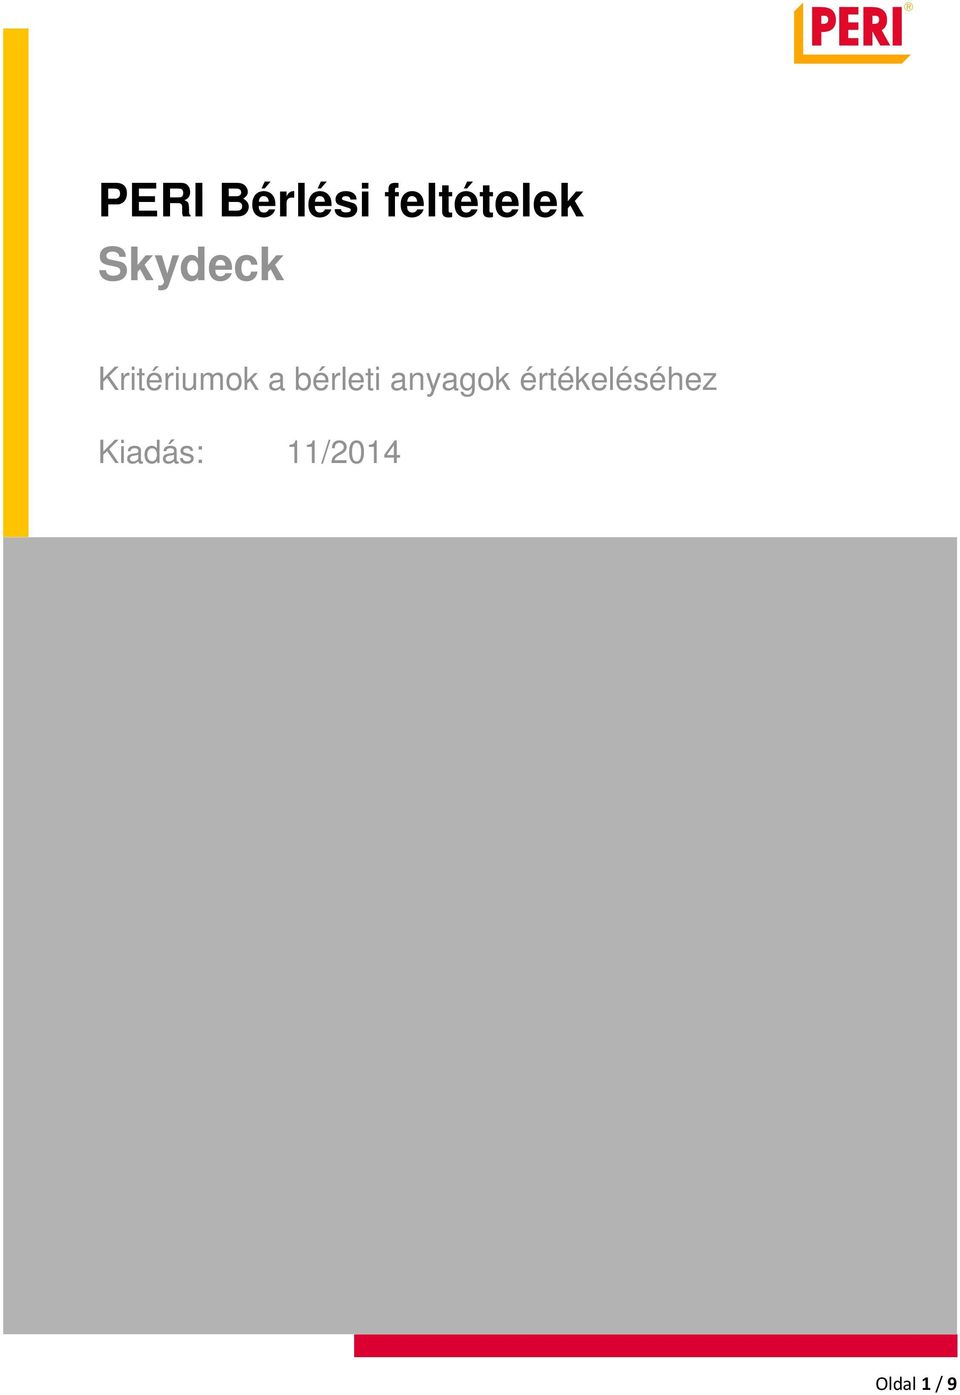 PERI Bérlési feltételek Skydeck - PDF Ingyenes letöltés